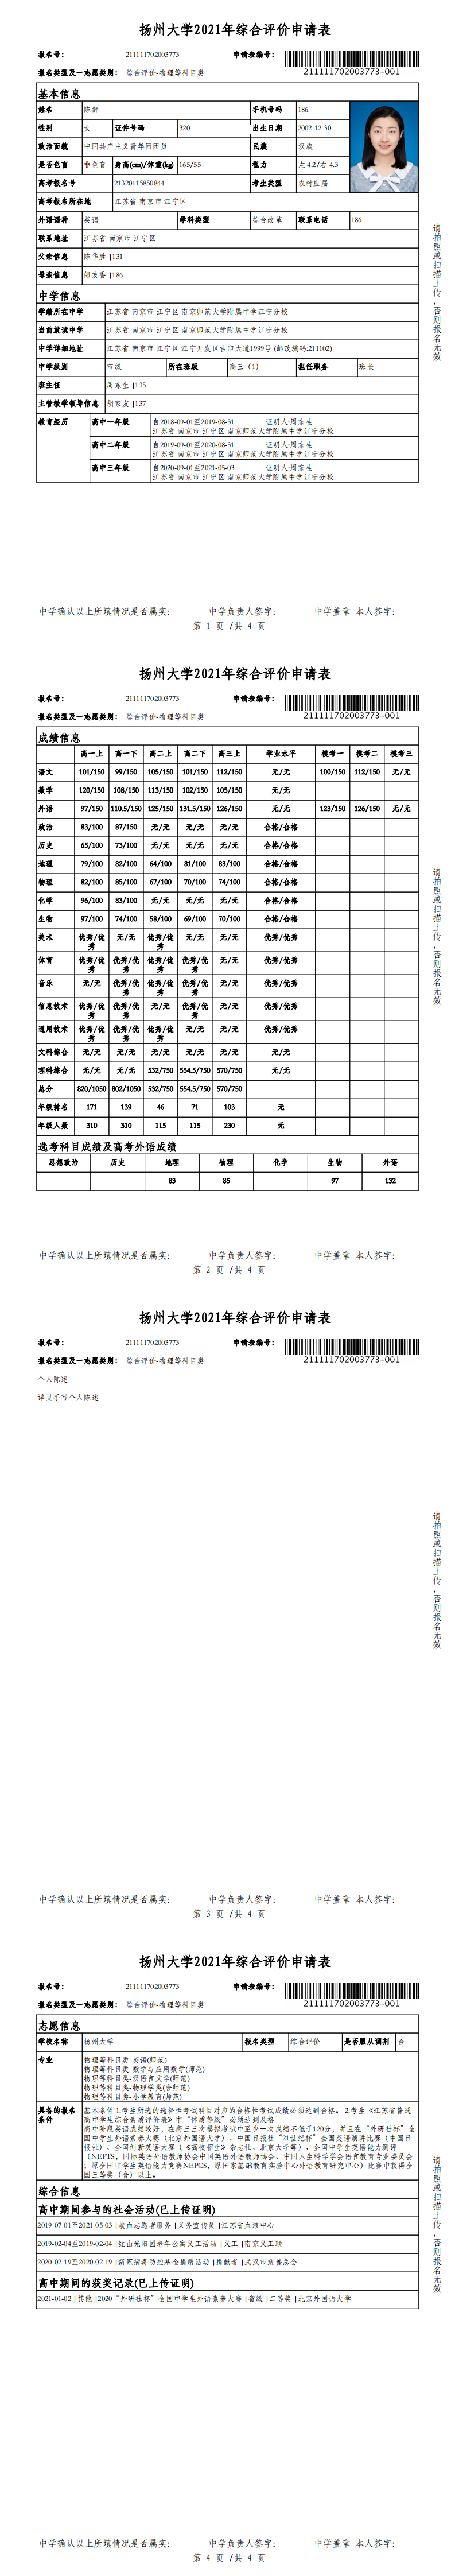 扬州大学申请表_0.png